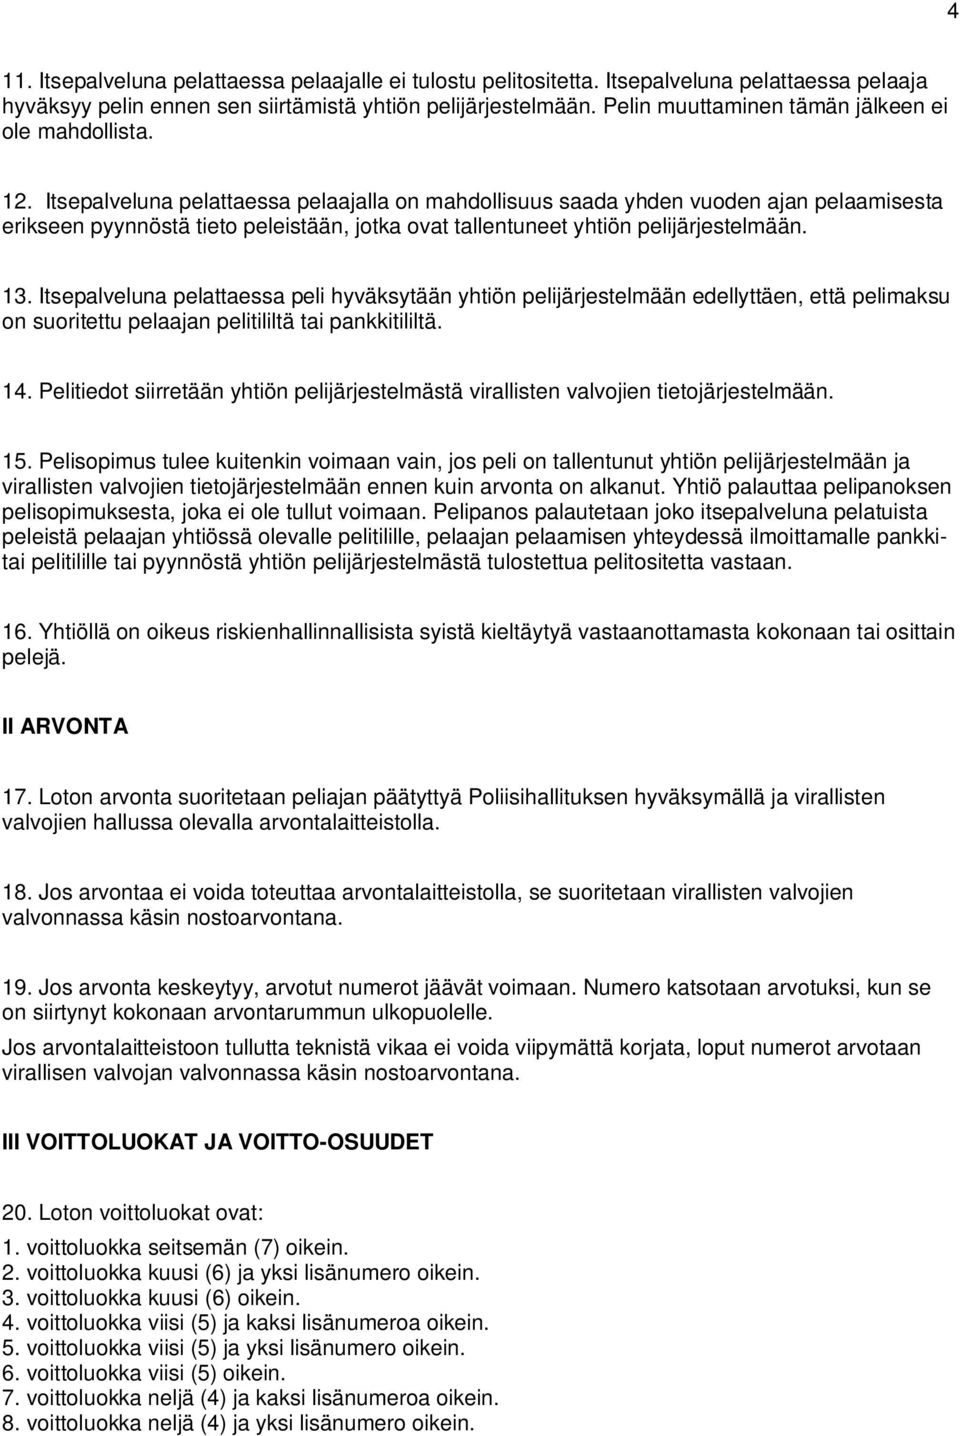 Liite sisäasiainministeriön asetukseen SMDno/2011/2027 VEIKKAUS OY:N  RAHAPELIEN SÄÄNNÖT - PDF Ilmainen lataus